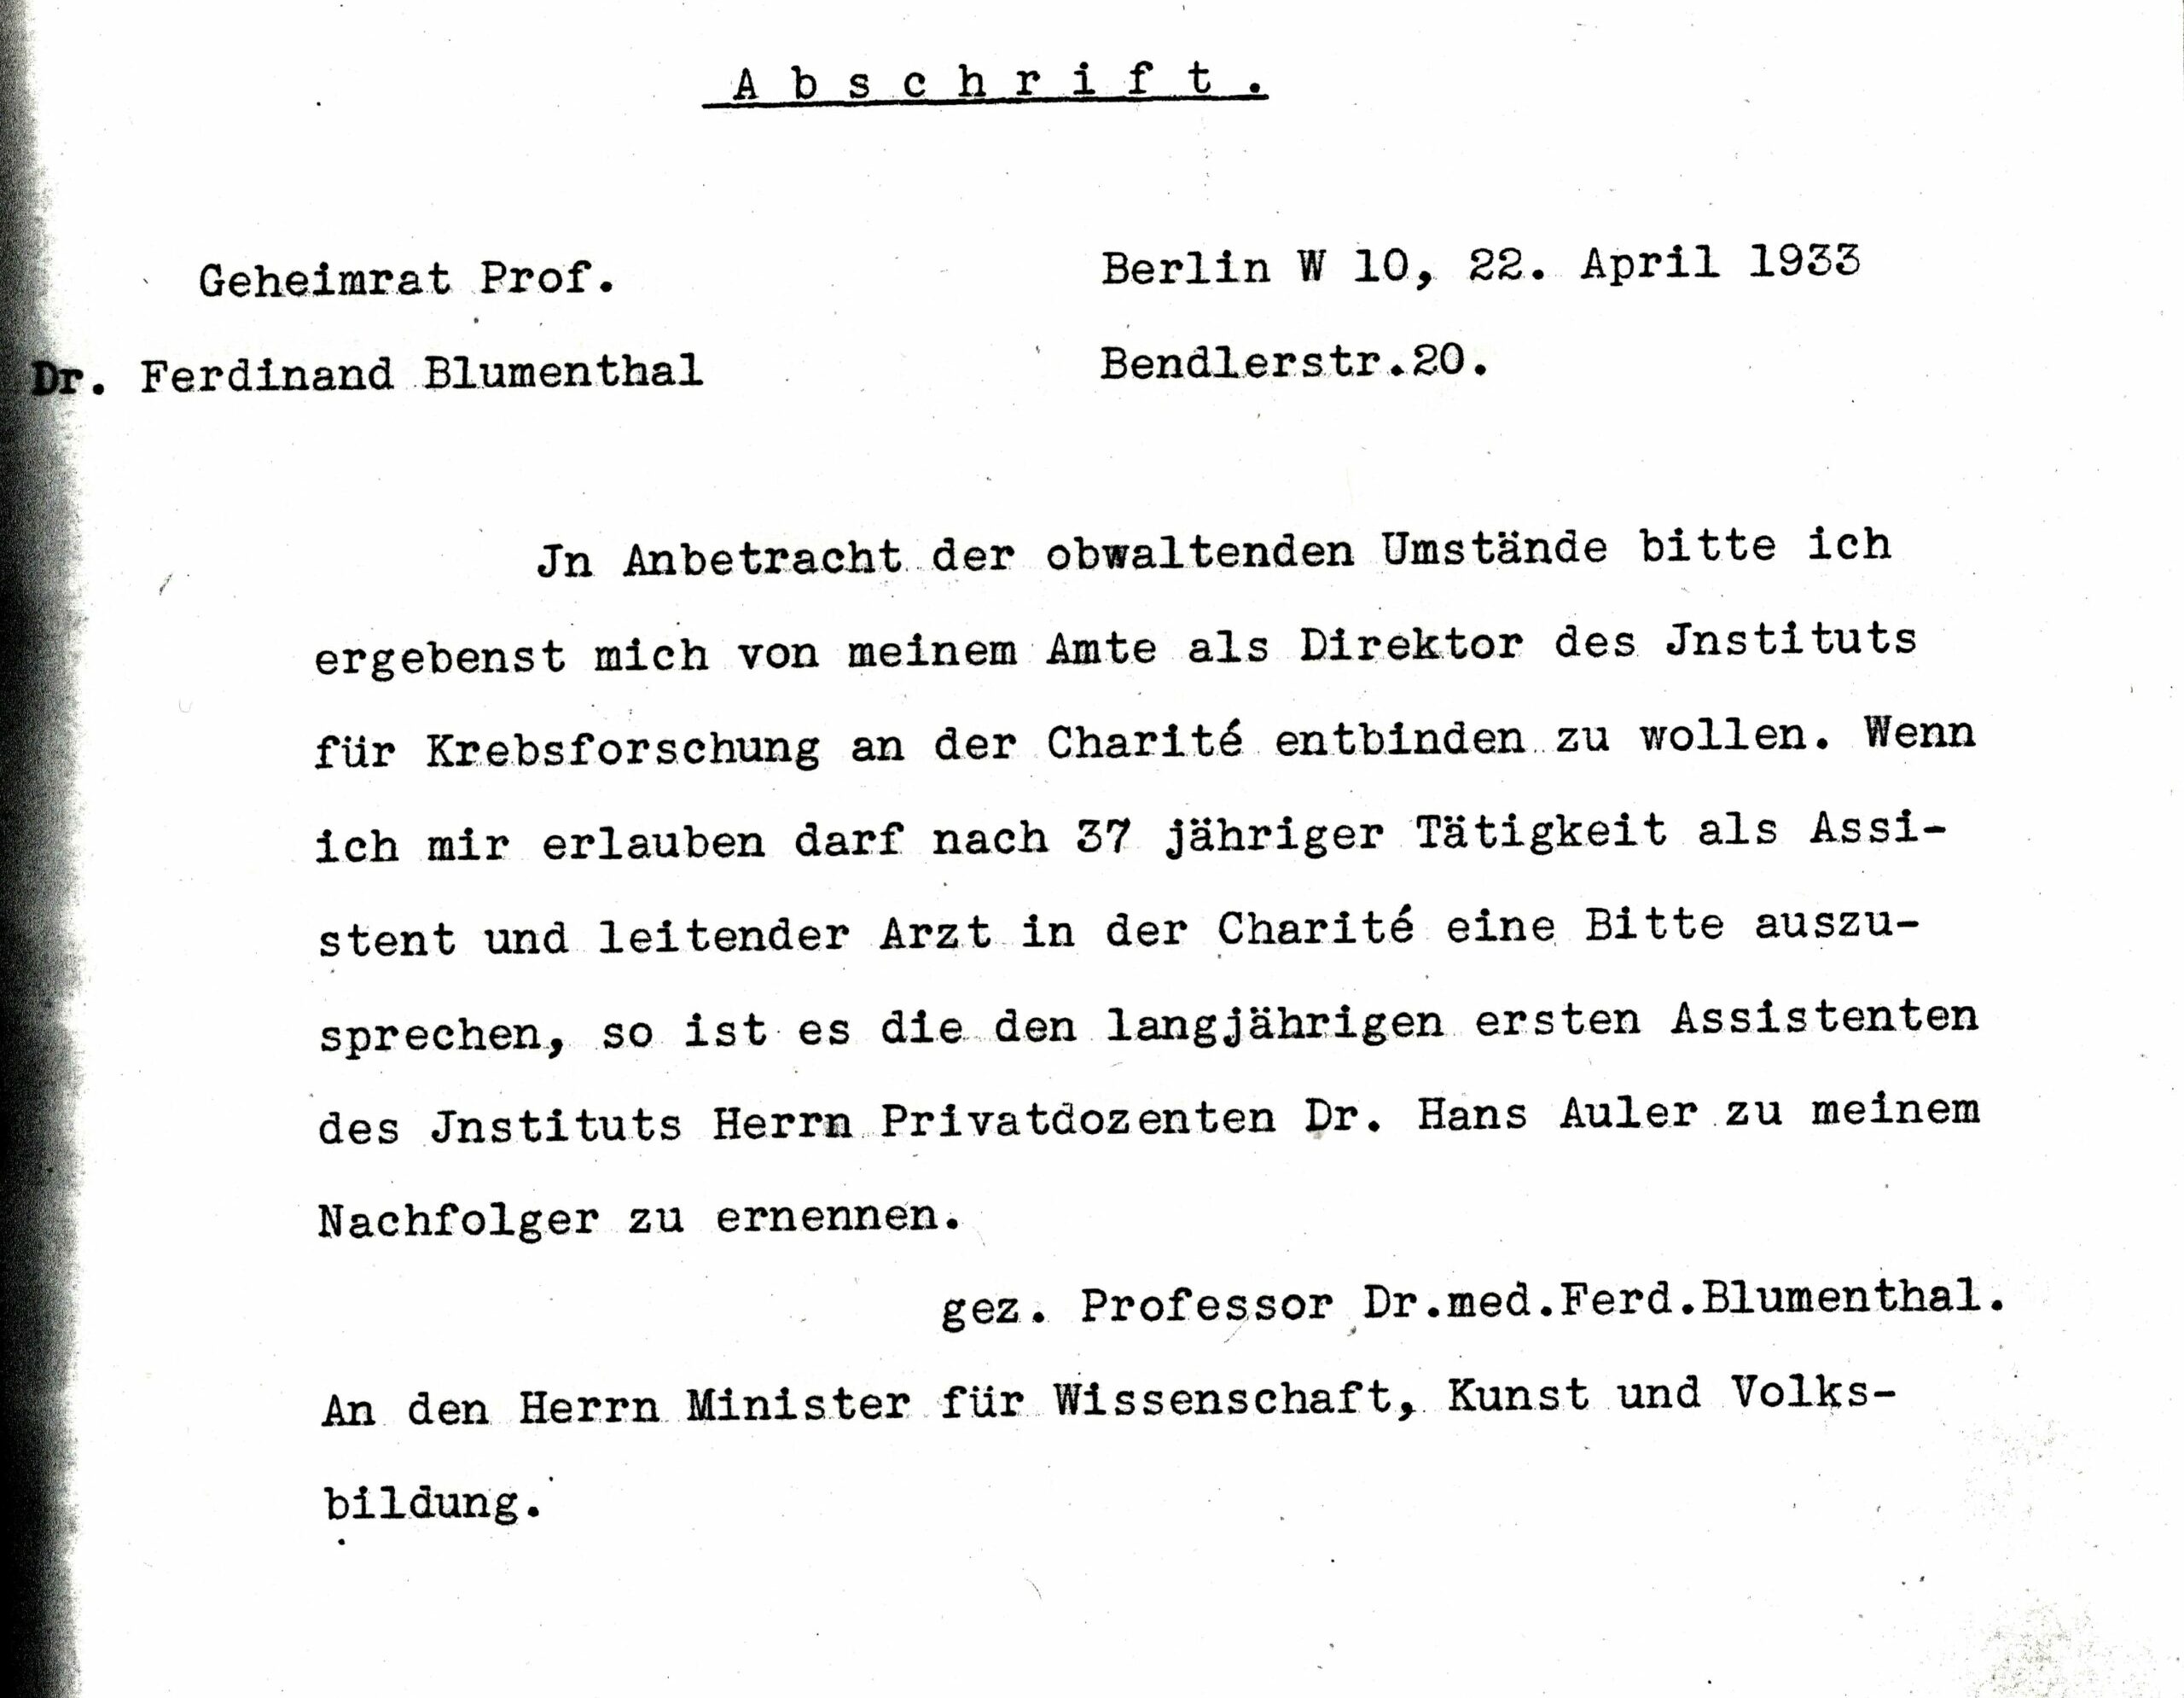 Rücktrittsscheiben an den Minister, April 1933, Archiv Humboldt-Universität Berlin, Personalakte Blumenthal